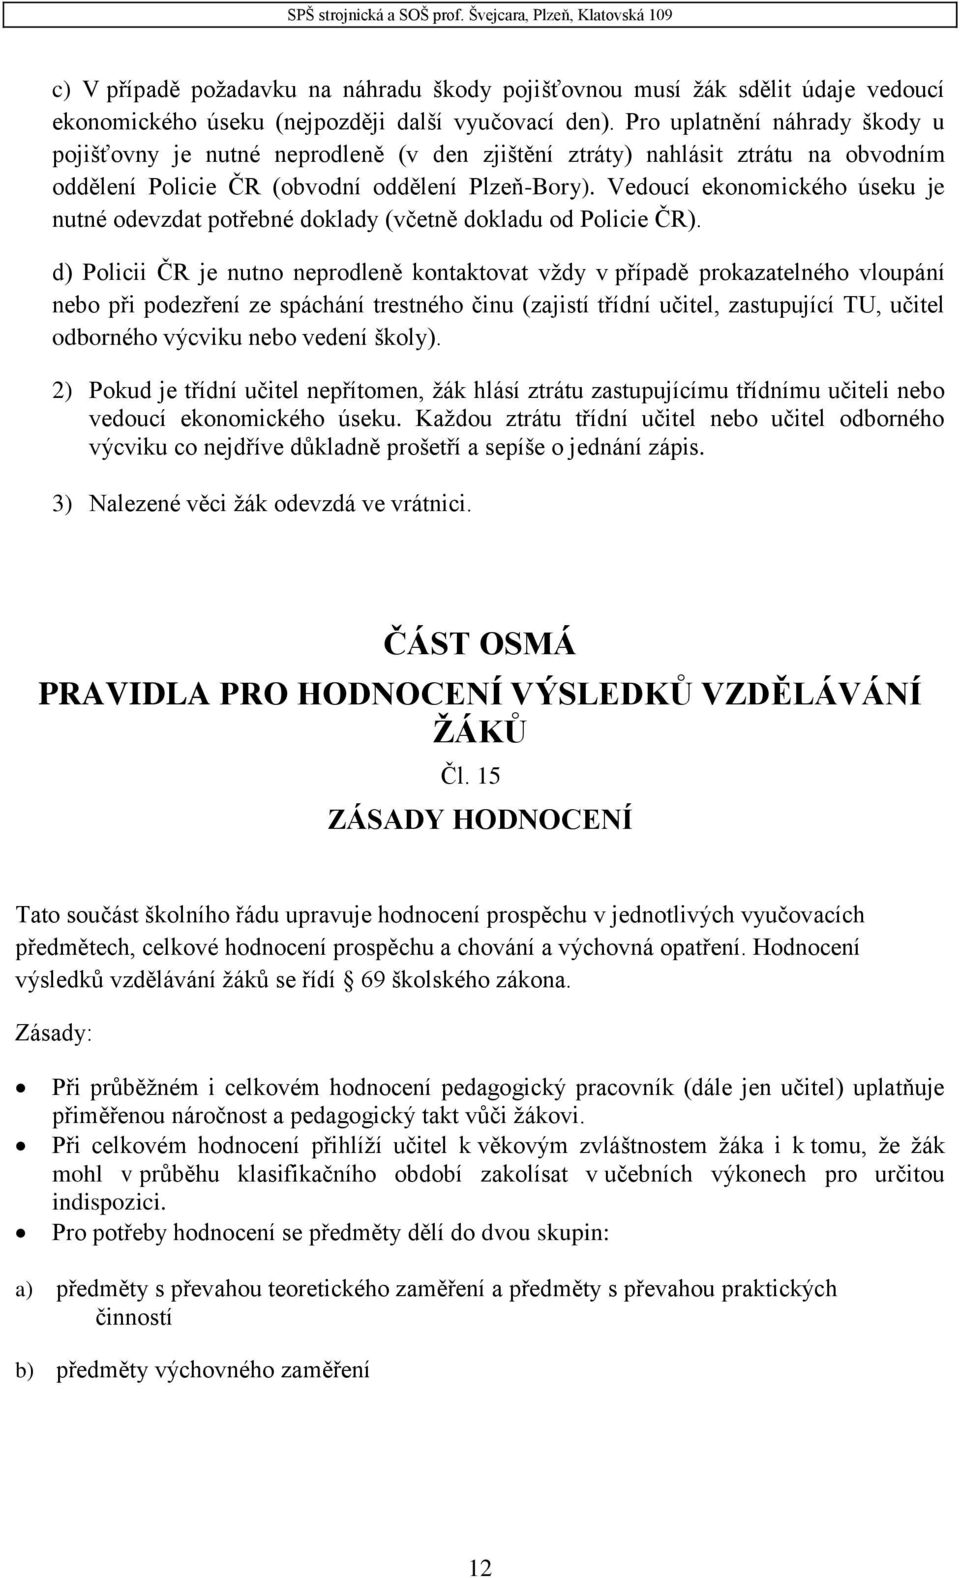 Vedoucí ekonomického úseku je nutné odevzdat potřebné doklady (včetně dokladu od Policie ČR).